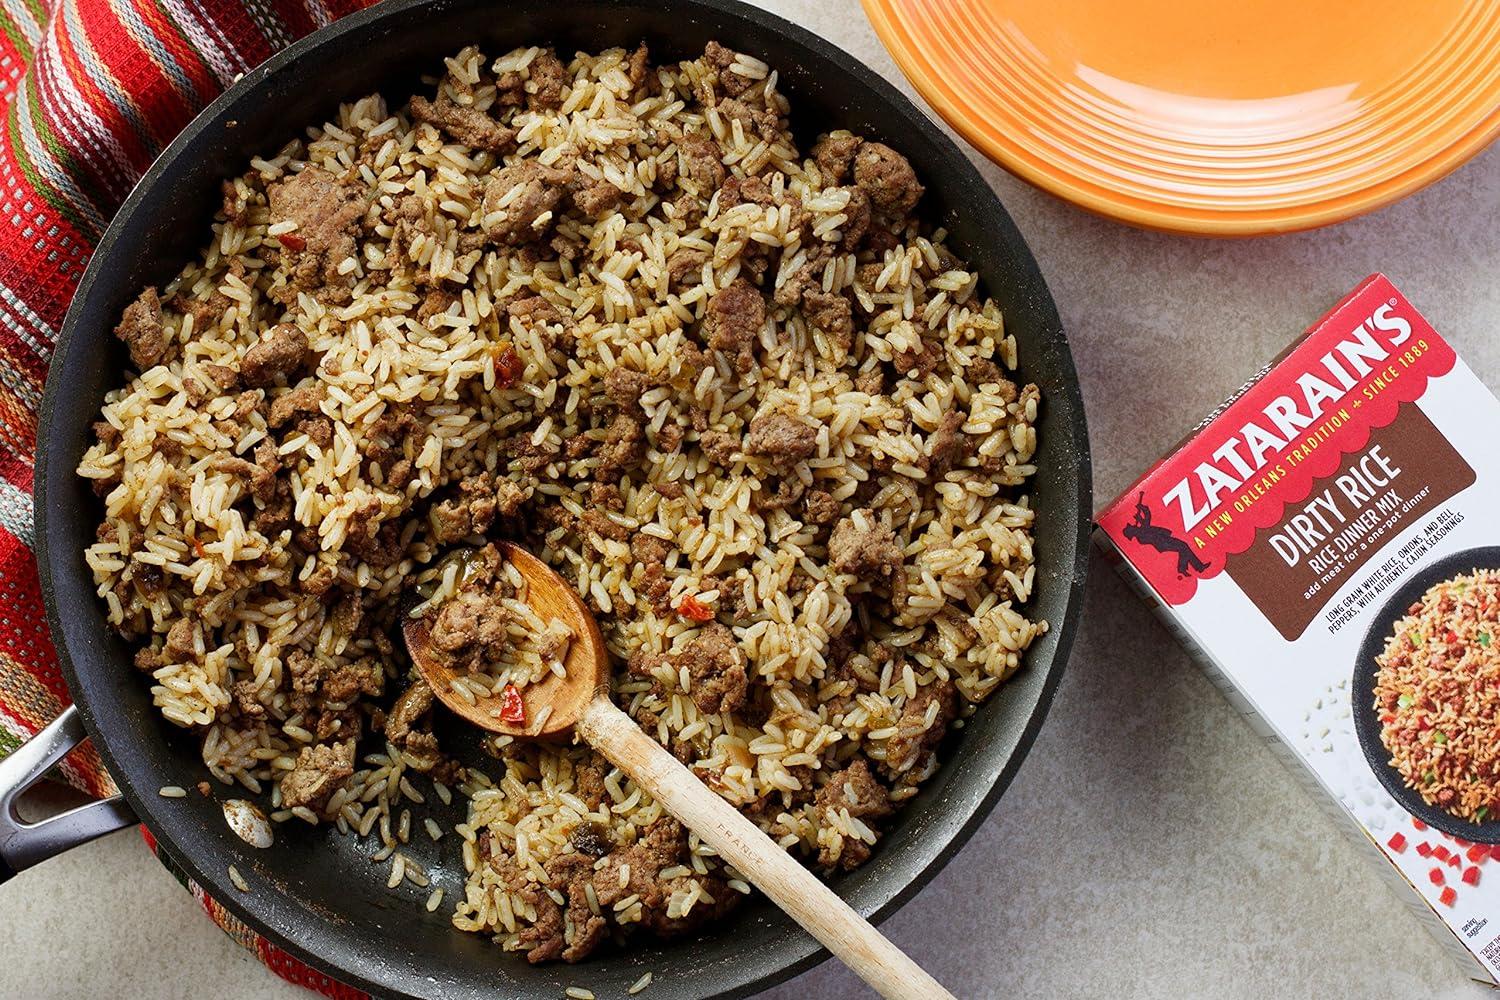 Zatarain's Dirty Rice Mix, 8 oz Packaged Meals